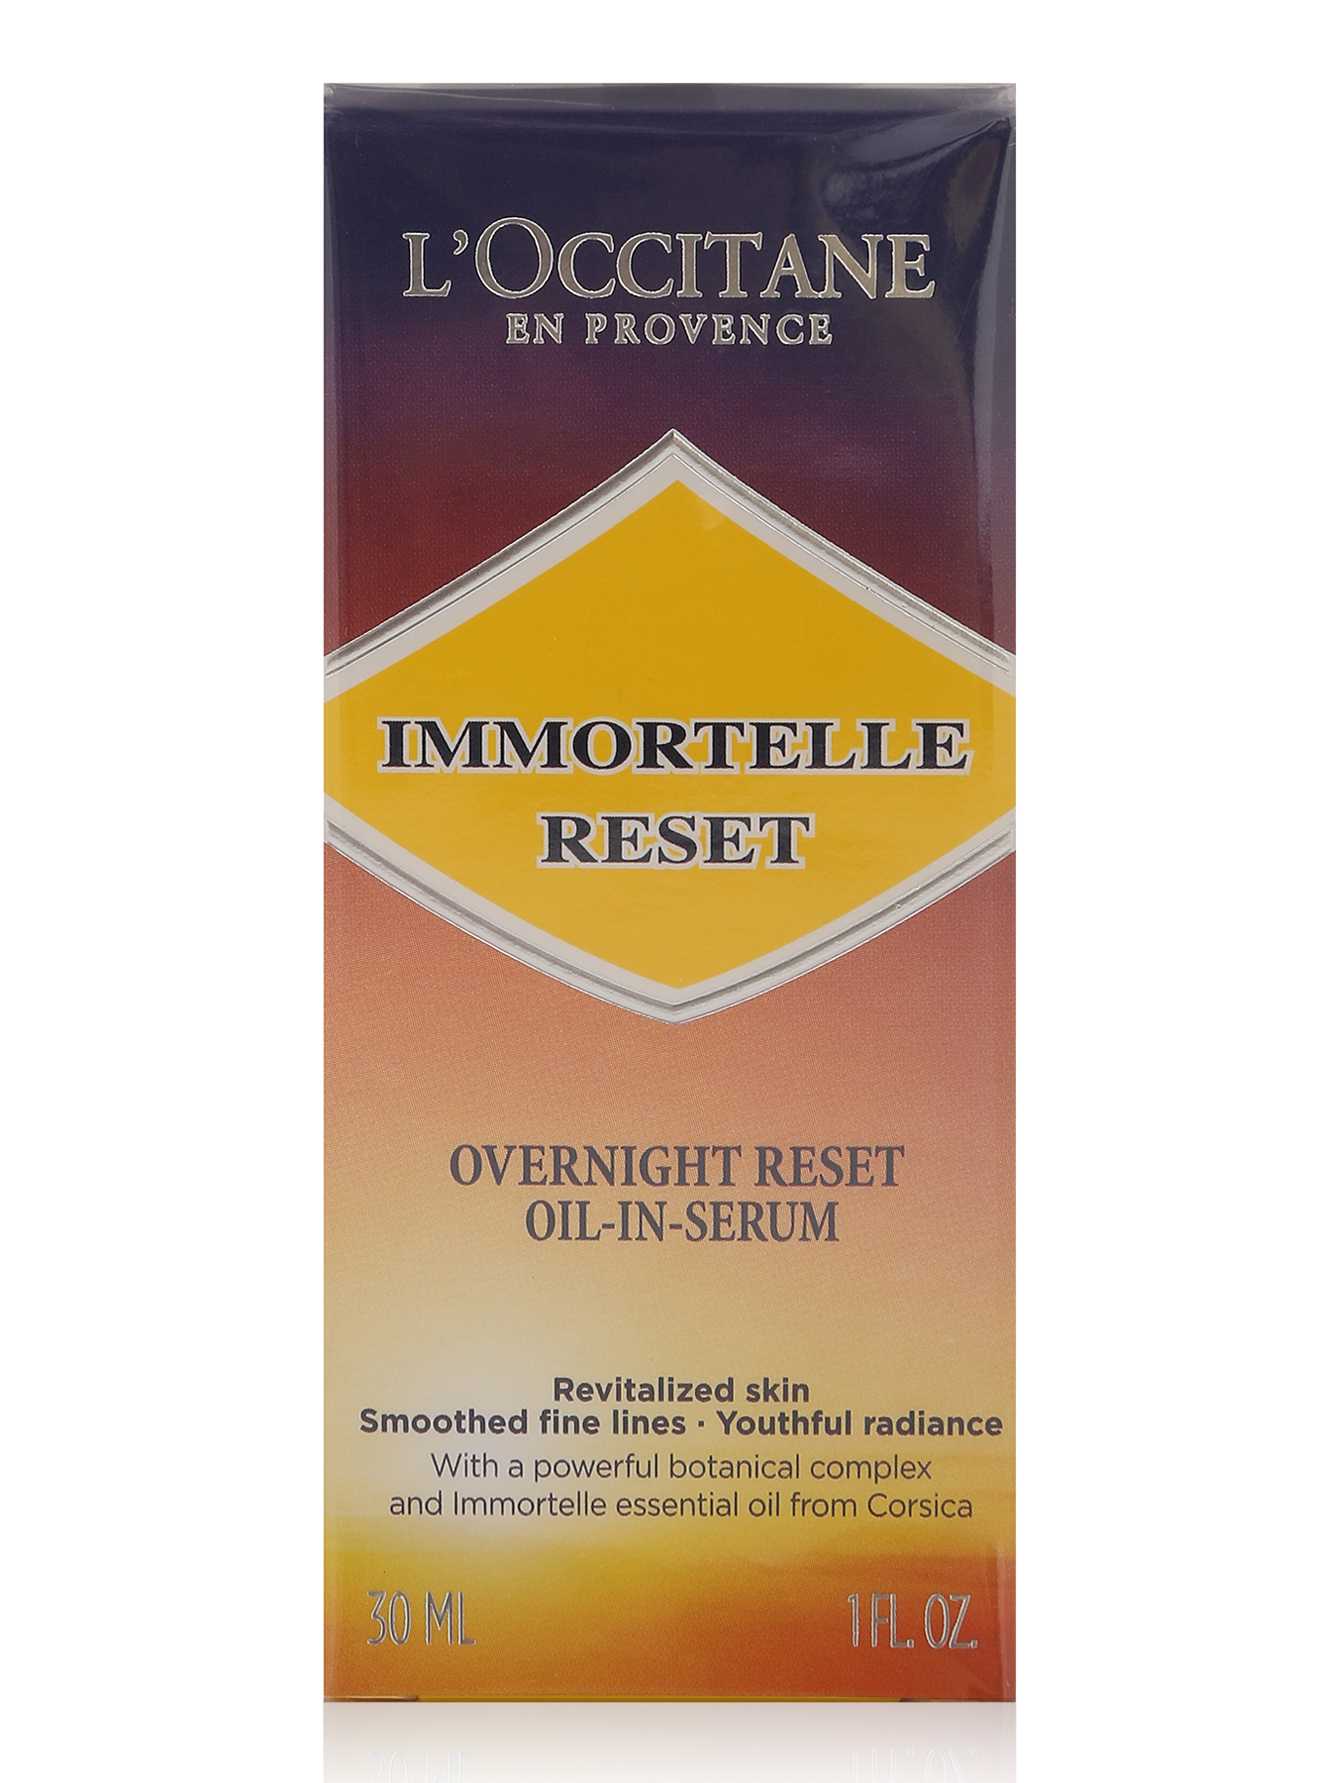 Французский бренд LOccitane представил новую ночную сыворотку Immortelle Reset, направленную на борьбу с признаками старения Как работает новинка, что входит в ее состав и какой эффект ждать читай не